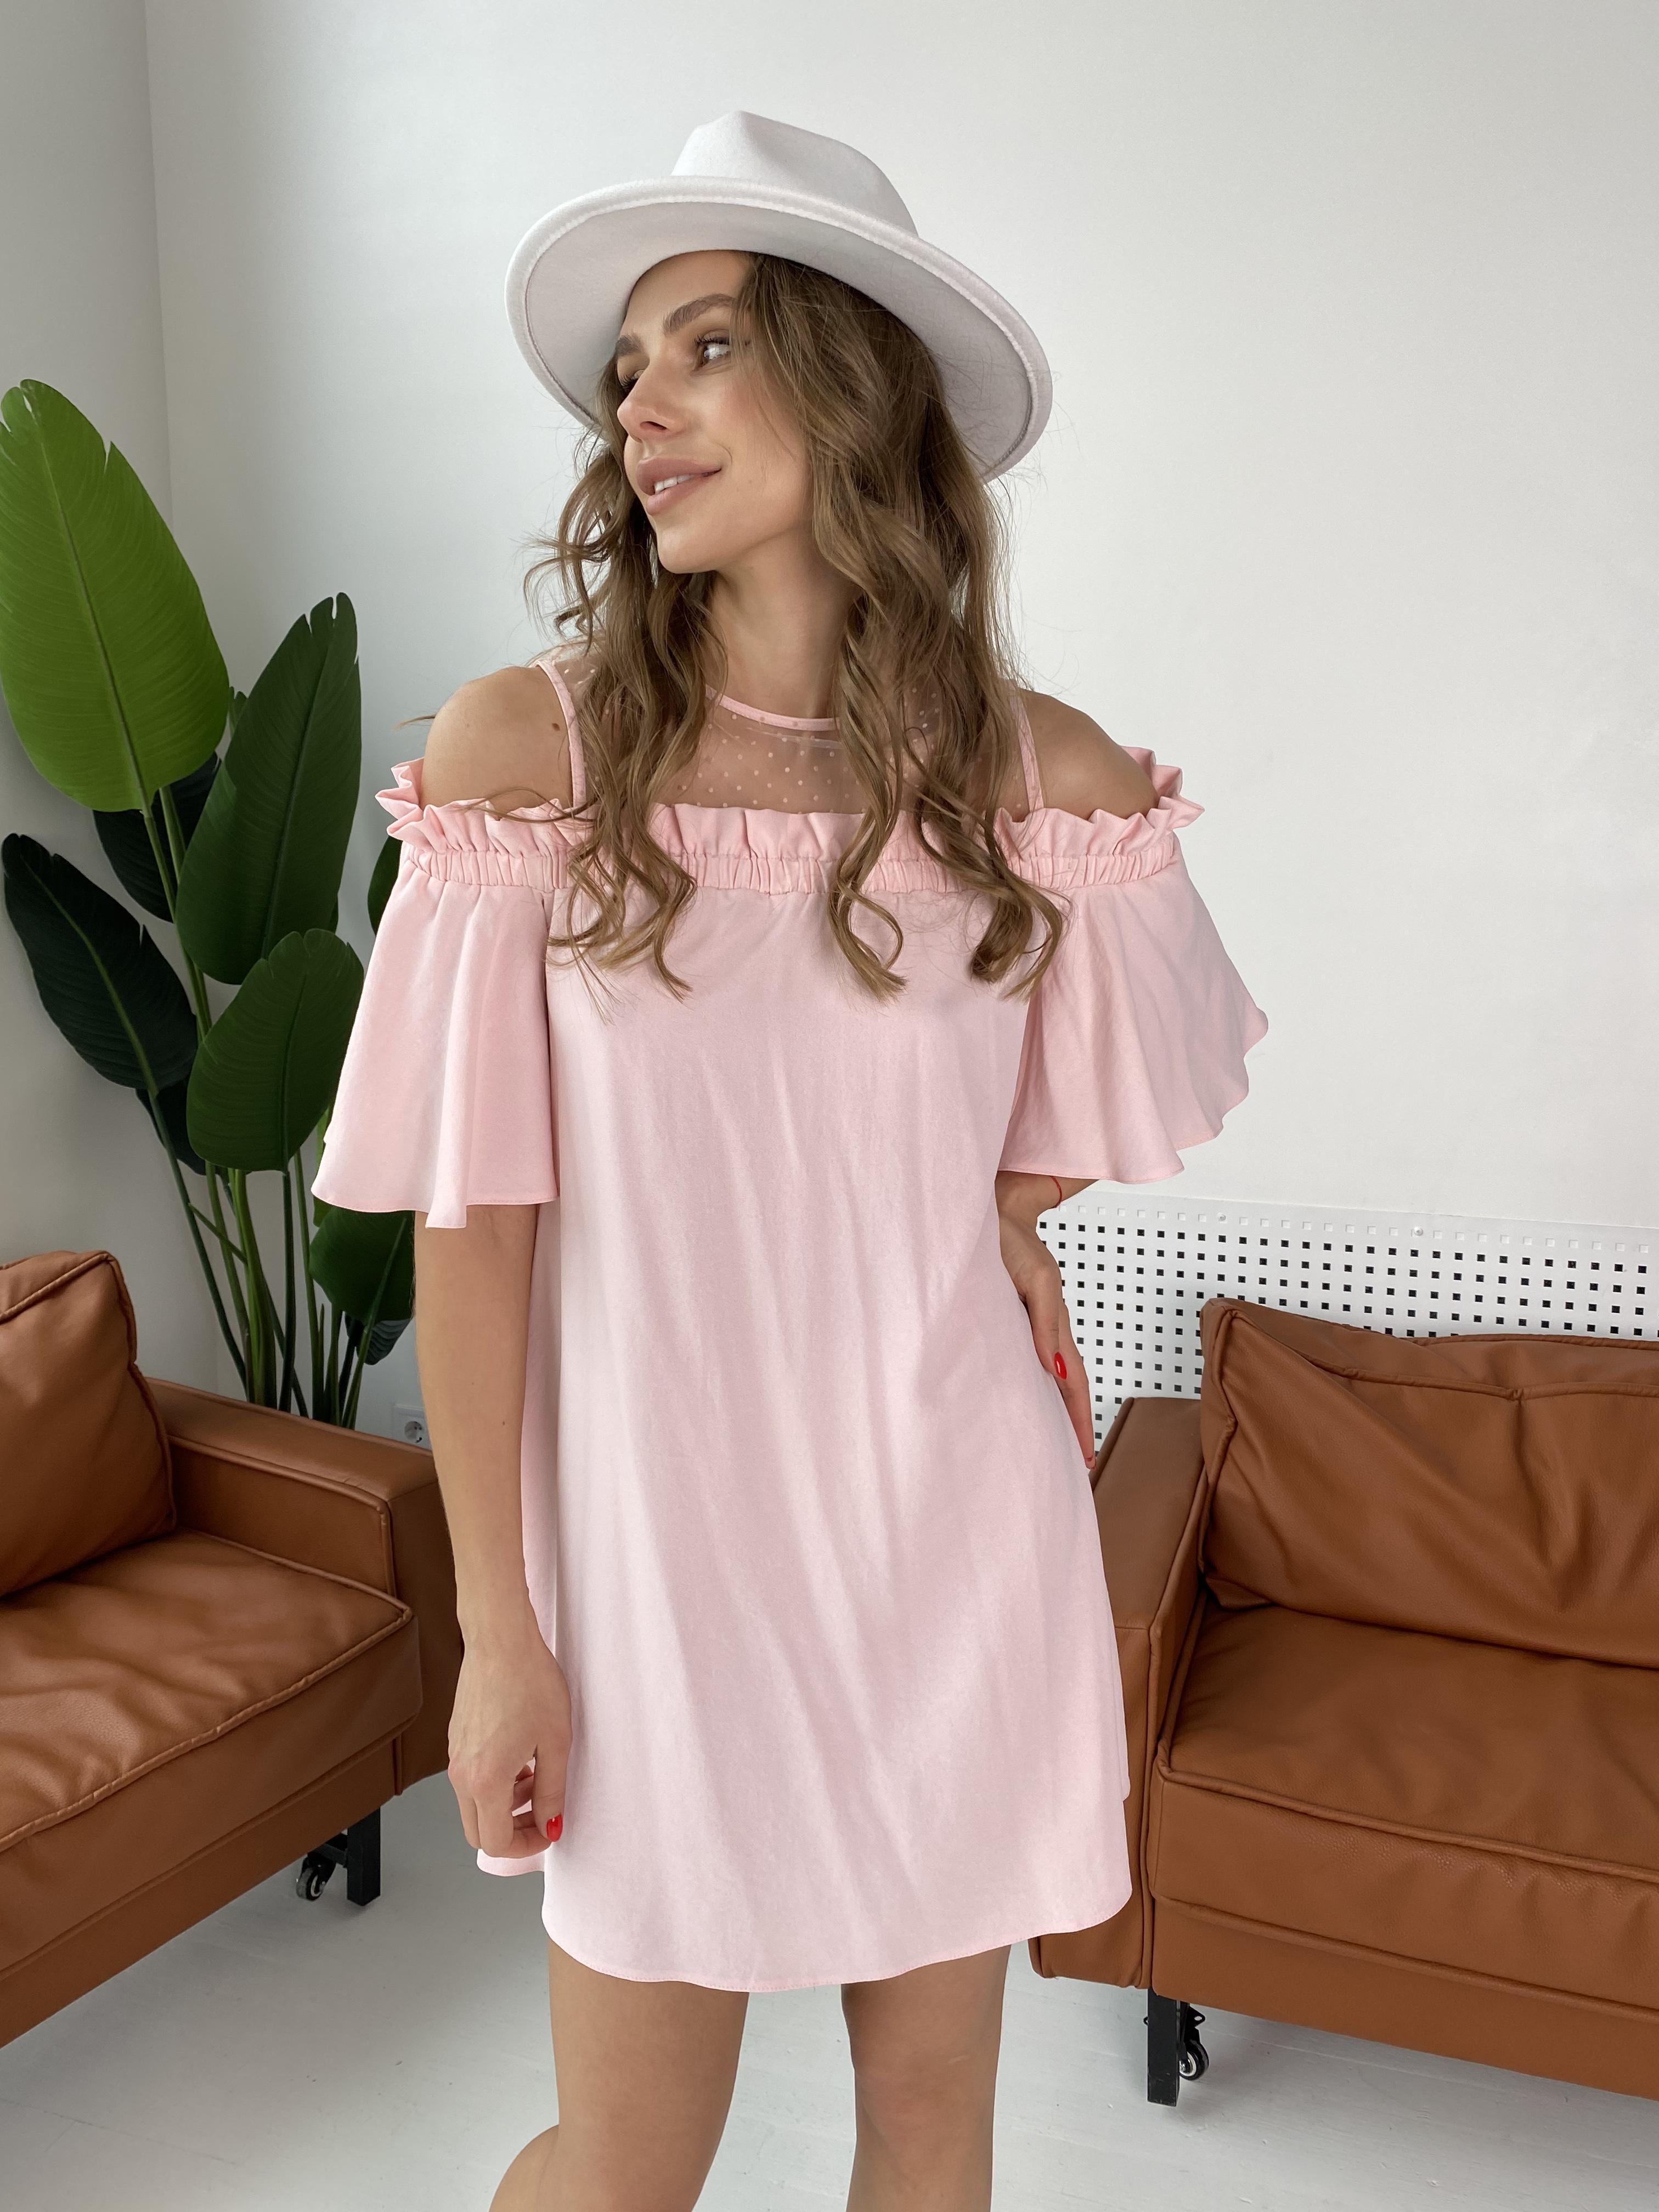 Молена платье 7192 АРТ. 42752 Цвет: Розовый Светлый 8 - фото 6, интернет магазин tm-modus.ru